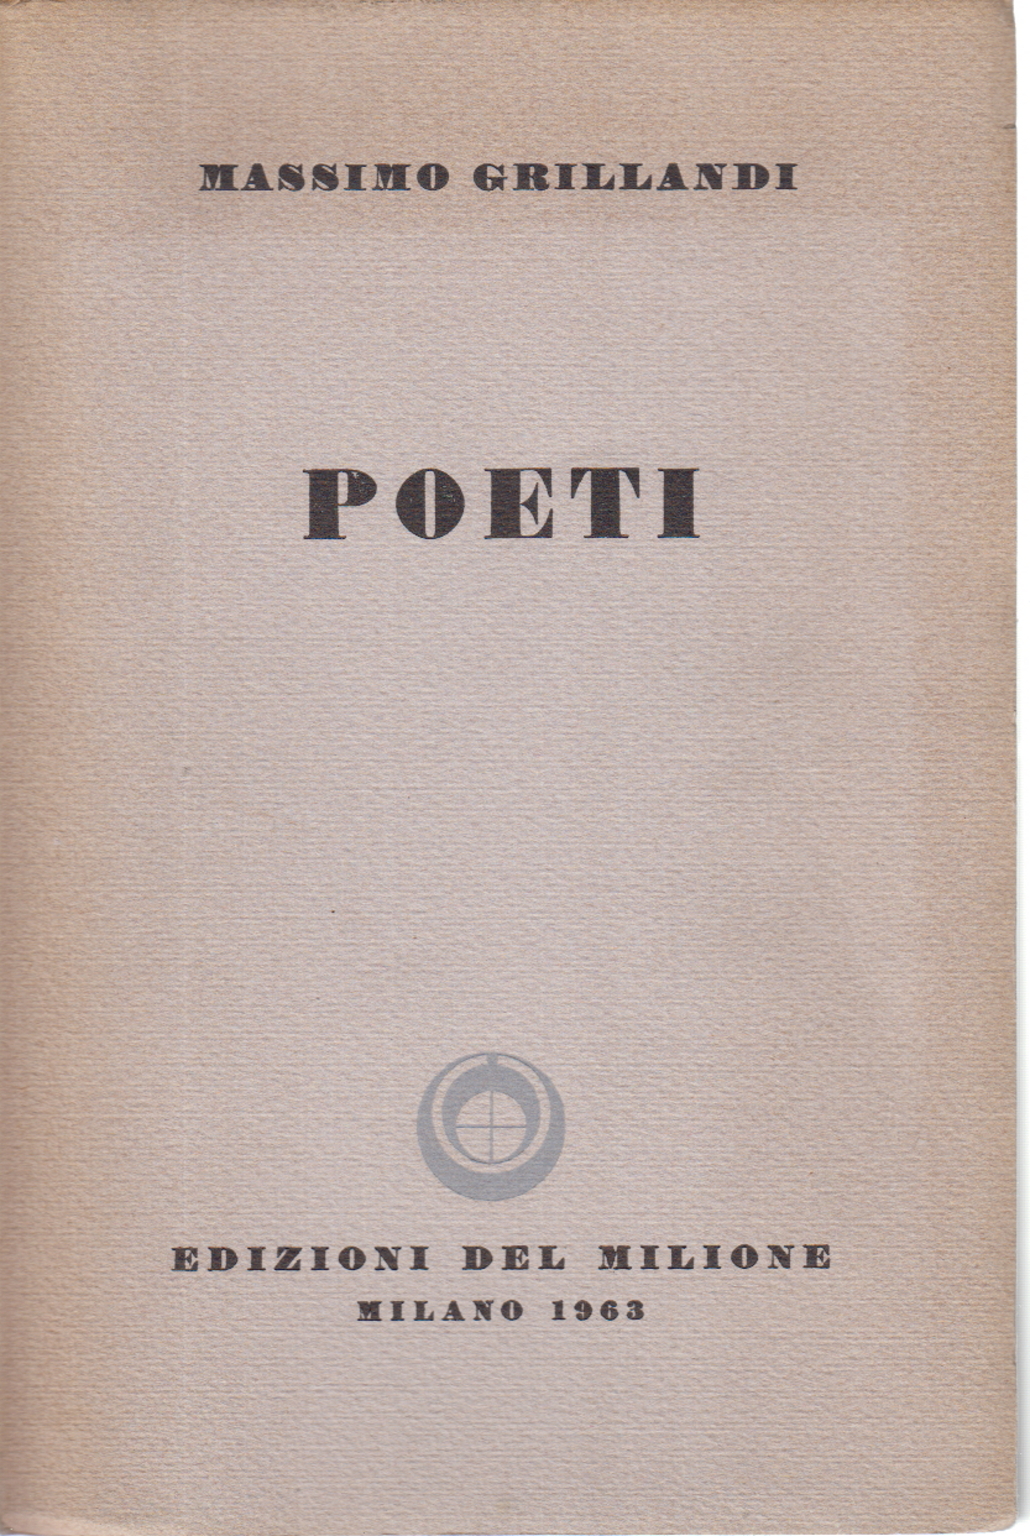 Los Poetas, El Máximo Grillandi